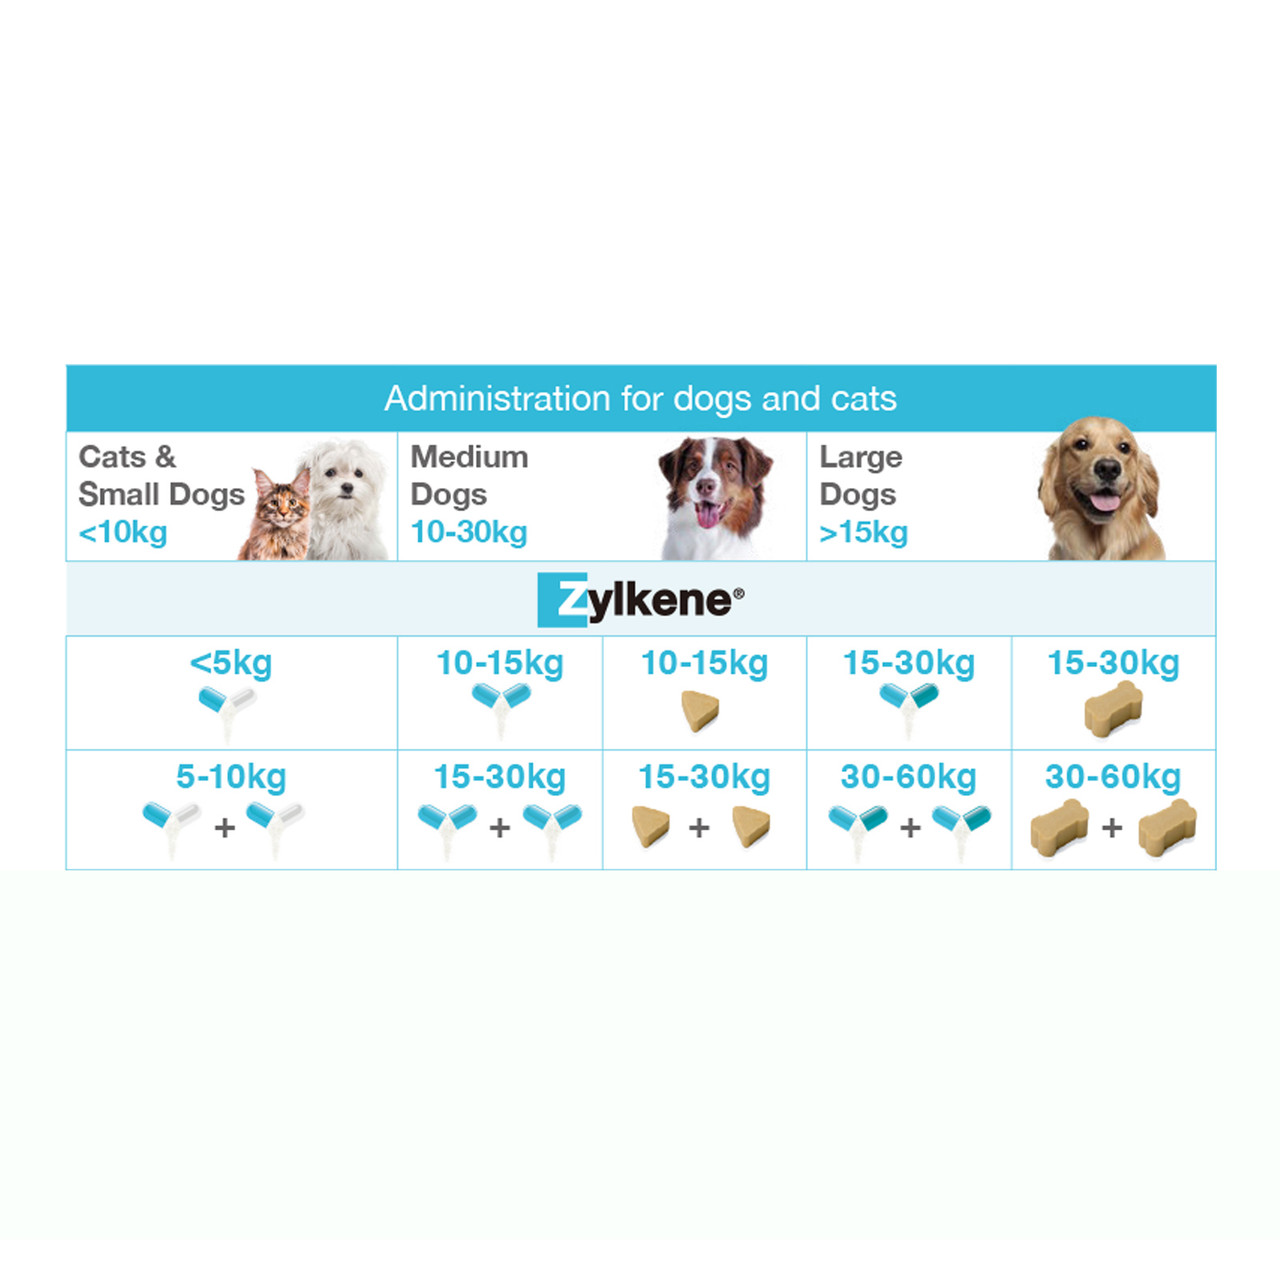 20% di sconto sull'integratore alimentare Zylkene per cani 225mg - 30 capsule presso Atlantic Pet Products